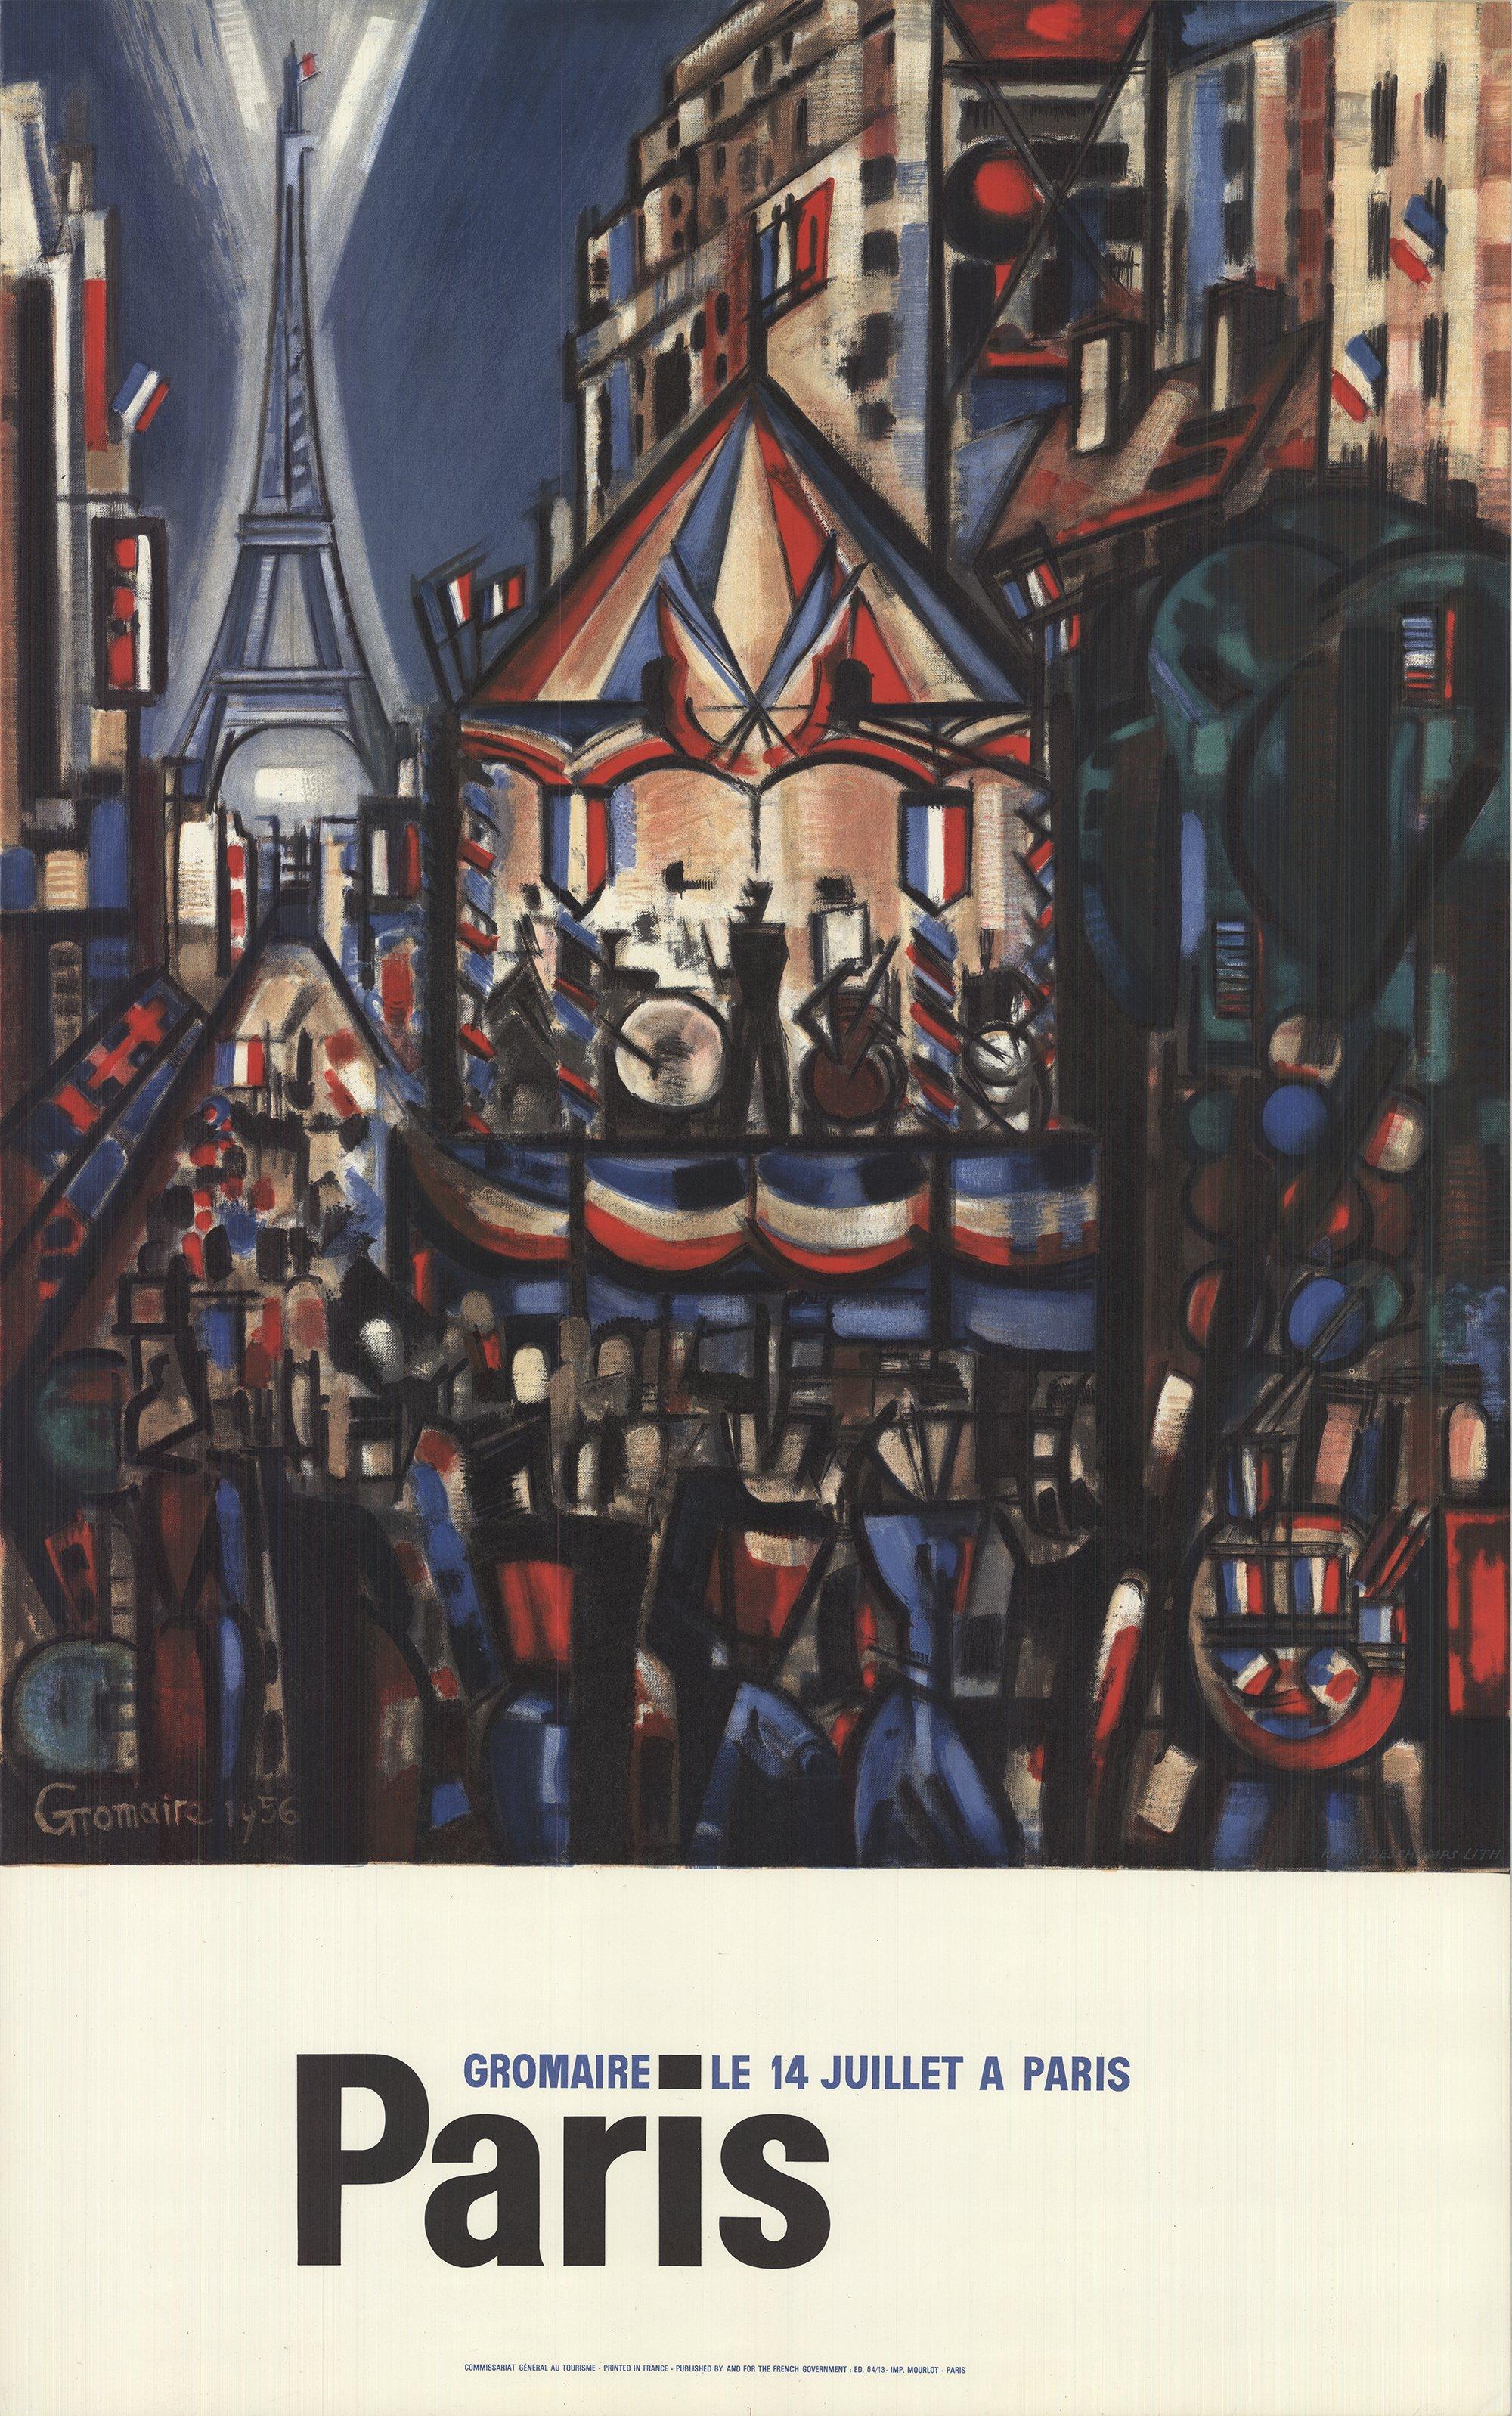 1964 After Marcel Gromaire 'Paris, July 14th, La Bastille'